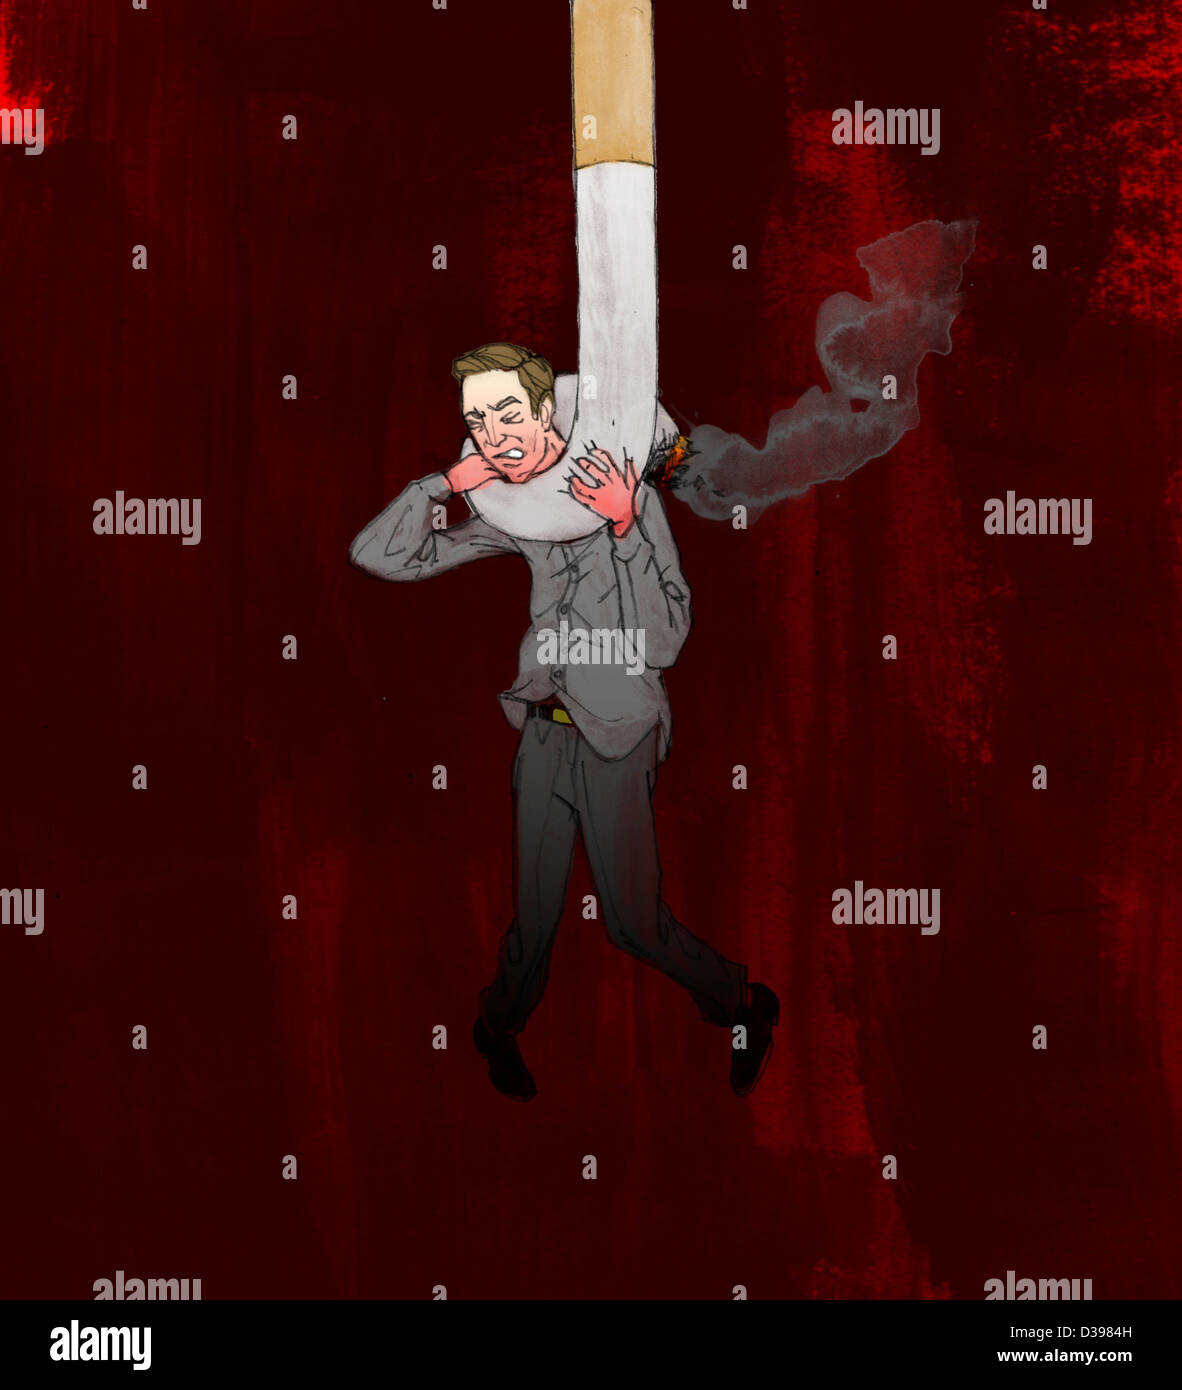 Mann gefangen von Zigarette zeigt das Konzept der Rauchen kann tödlich sein Stockfoto